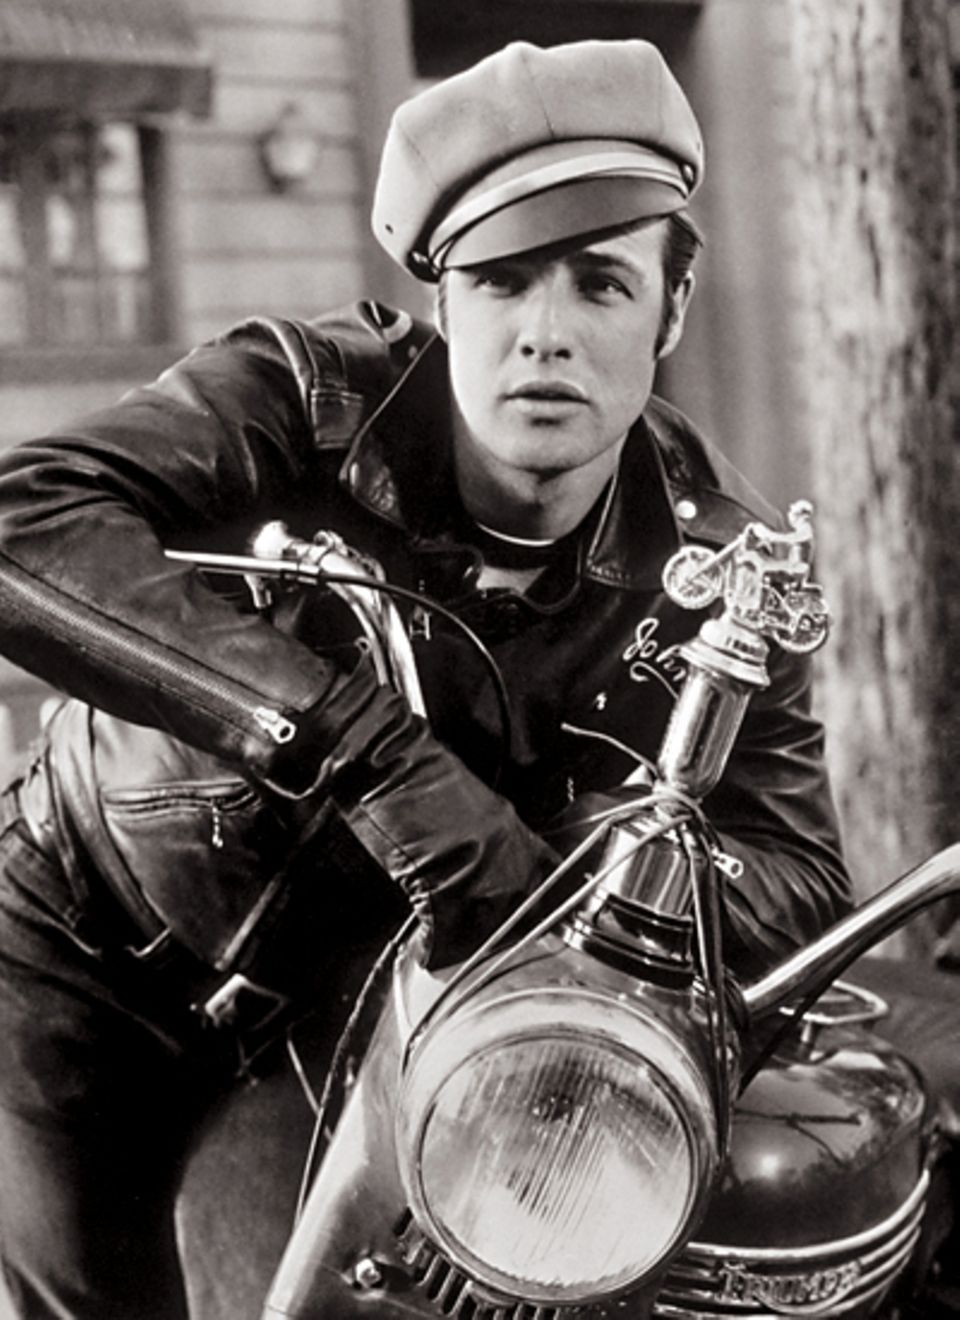 Stars & Bikes - Prominente und ihre Motorräder:
 Marlon Brando als Johnny Strabler, Anführer des Black Rebel Motorcycle Club, in